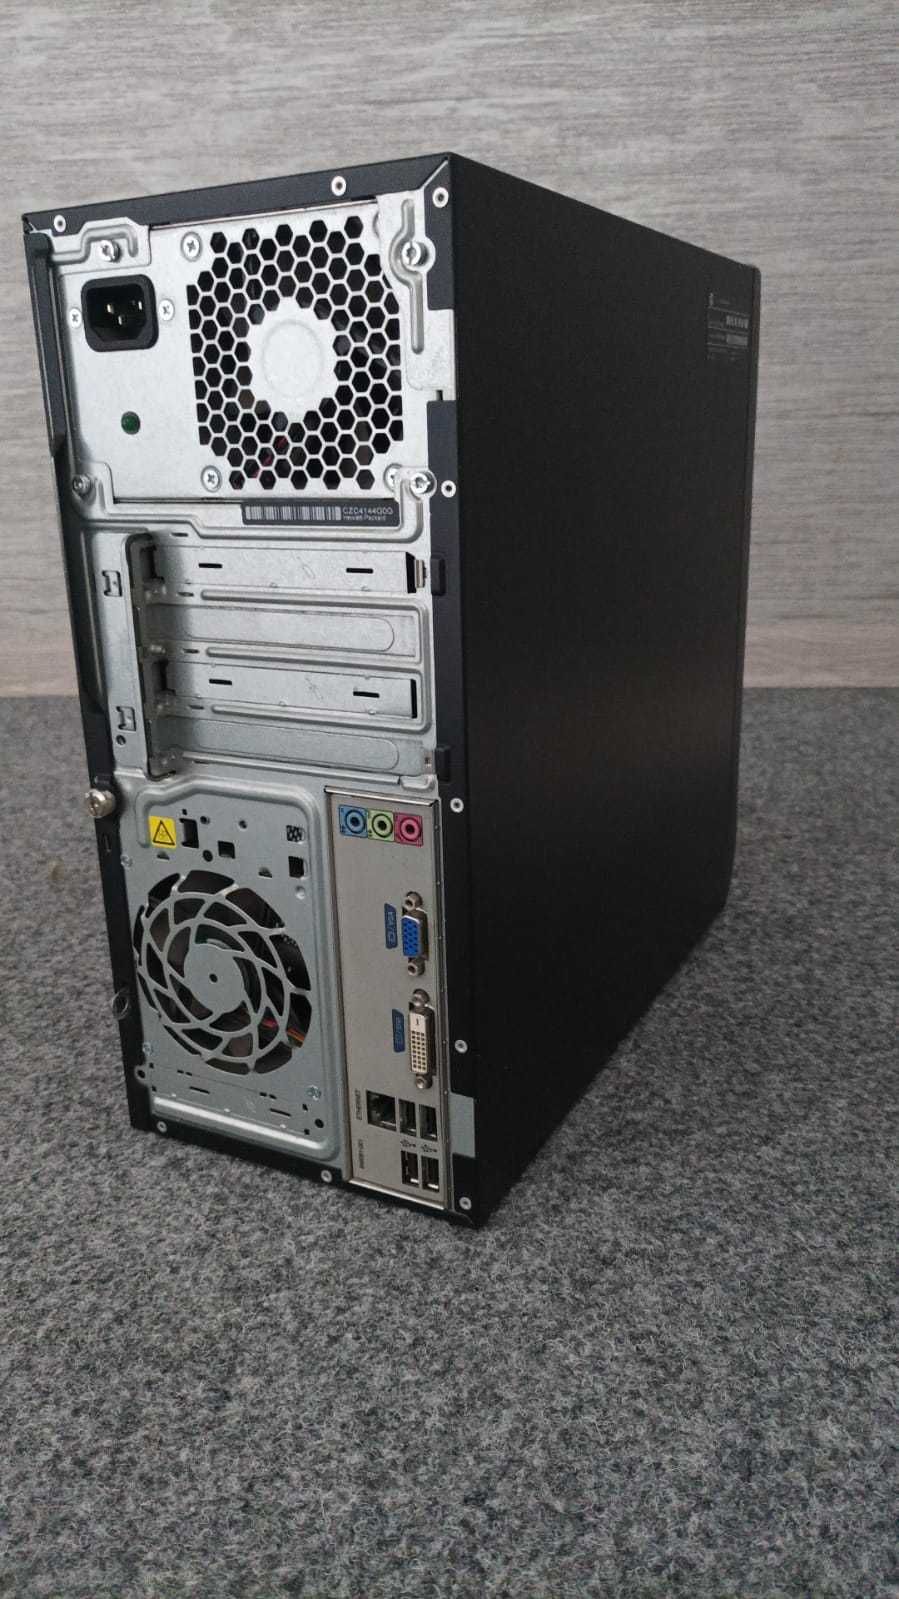 Брендовый компьютер HP i3 2130, В рабочем состоянии.